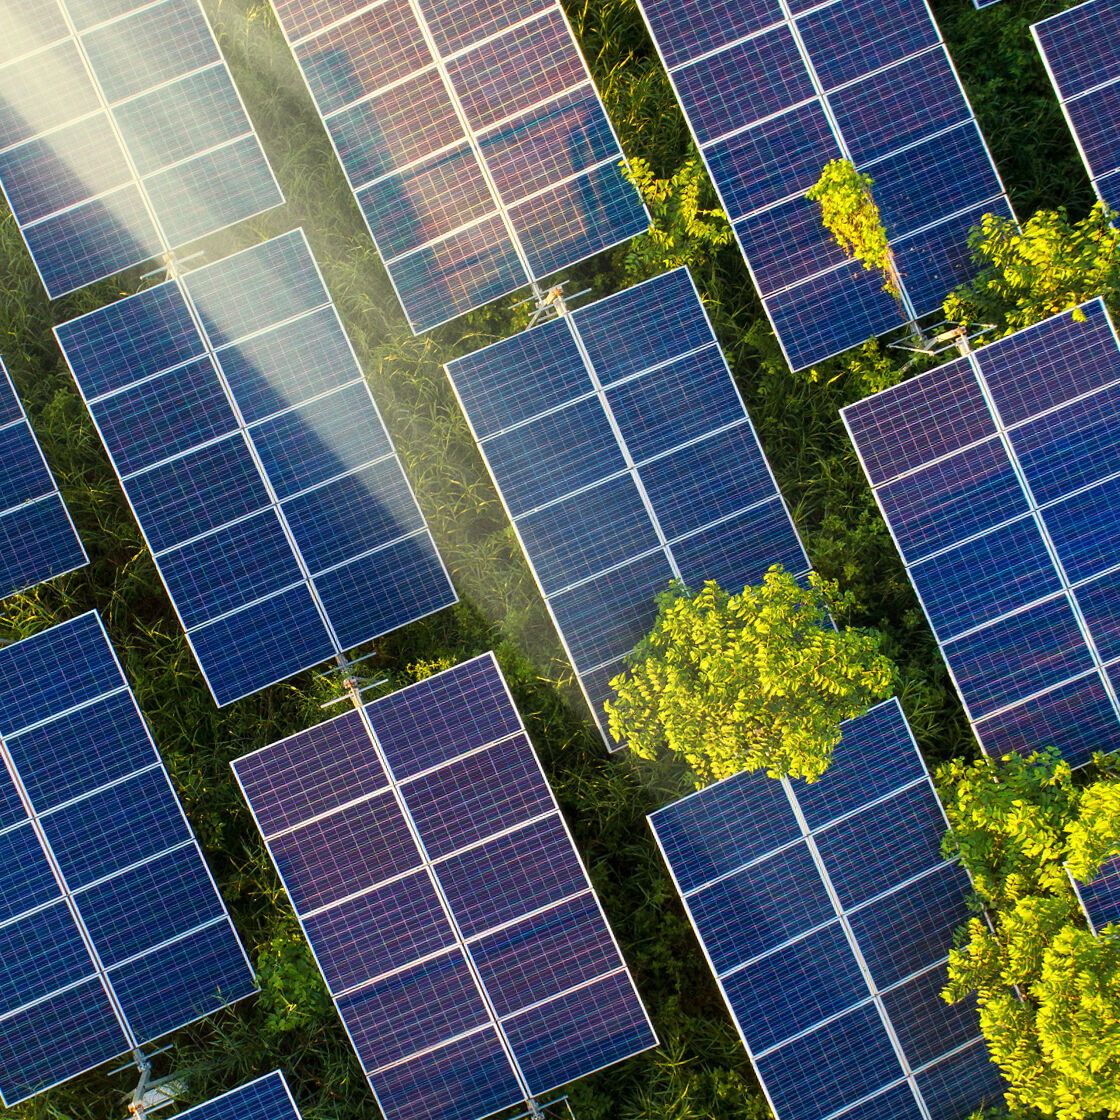 Toppvisning av store solcellepaneler i en skog, med treblader synlig mellom panelene